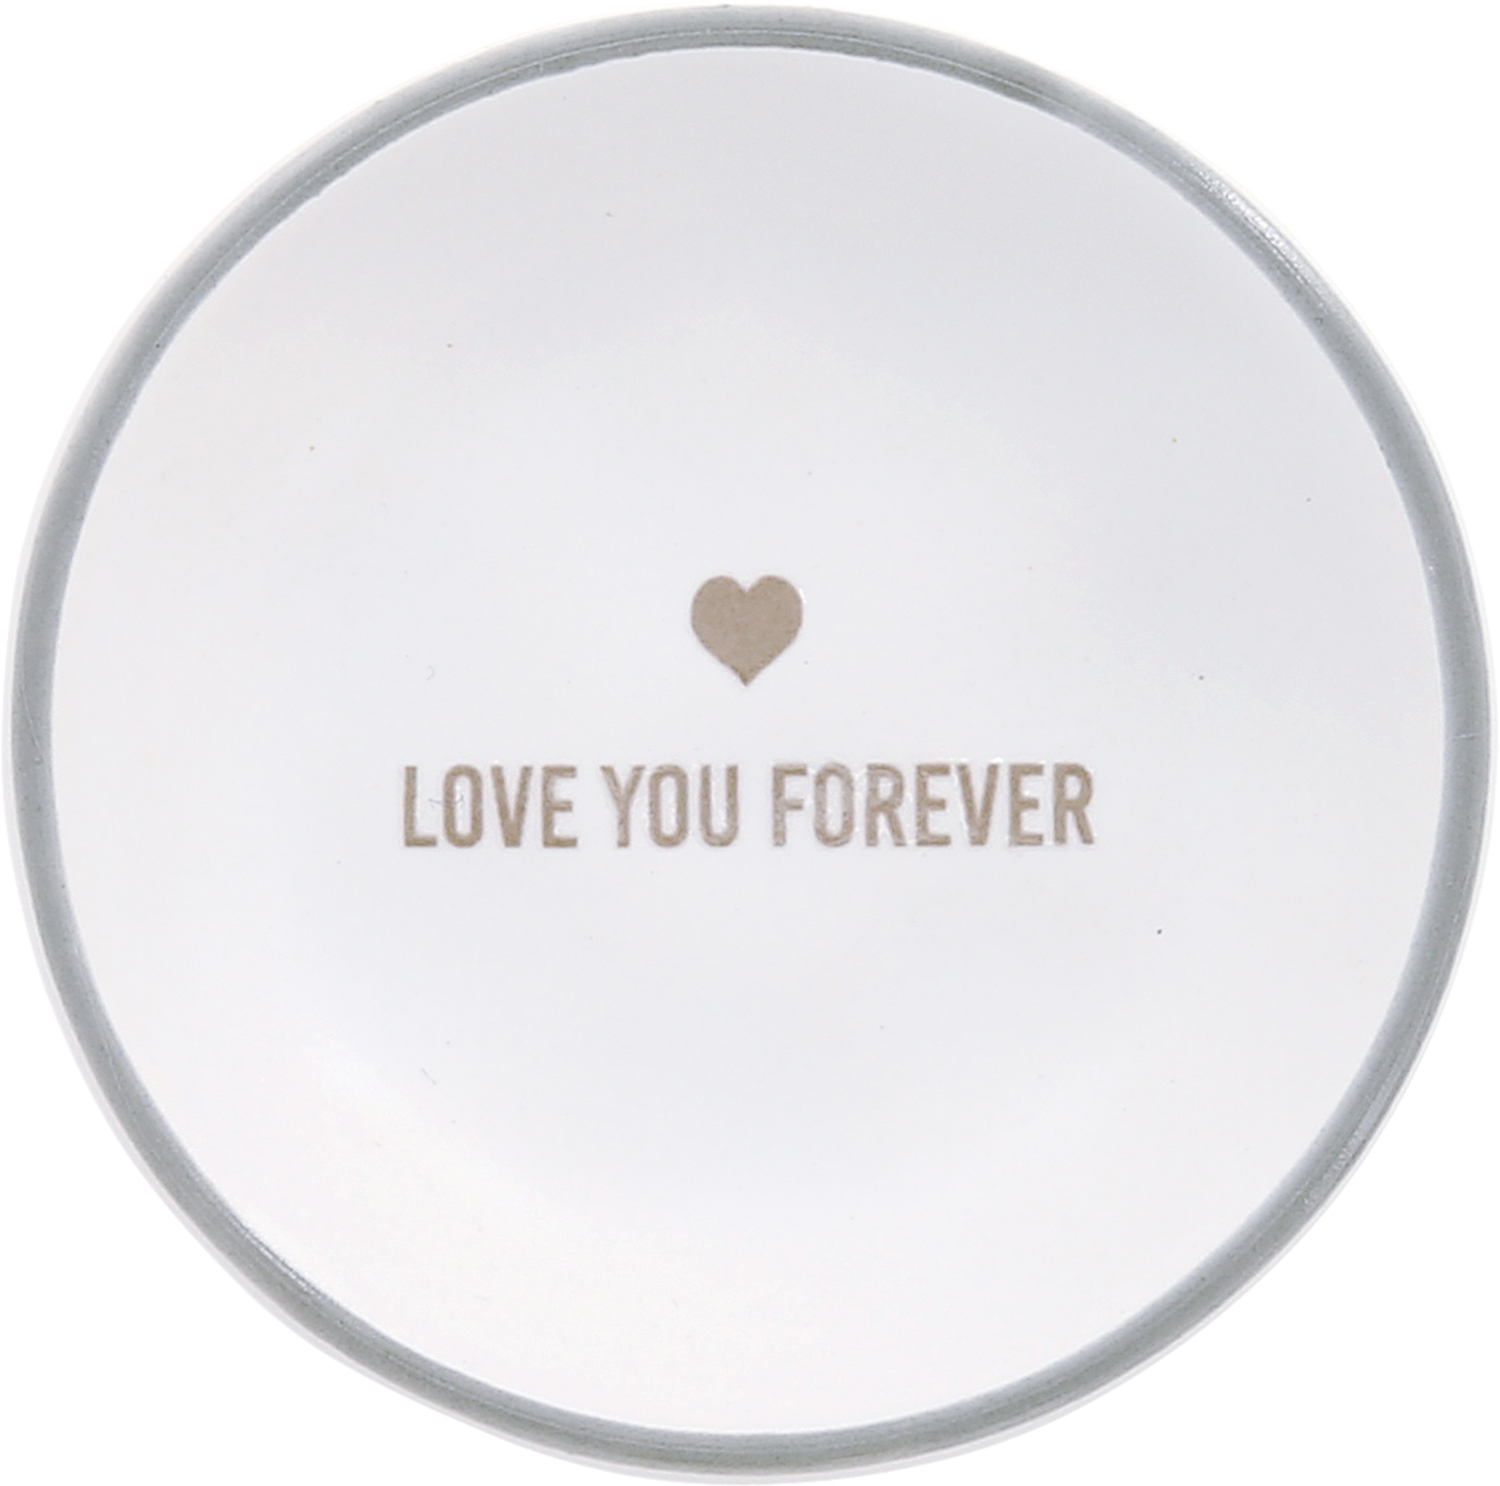 Love You Forever by Love You - Love You Forever - 2.5" Trinket Dish